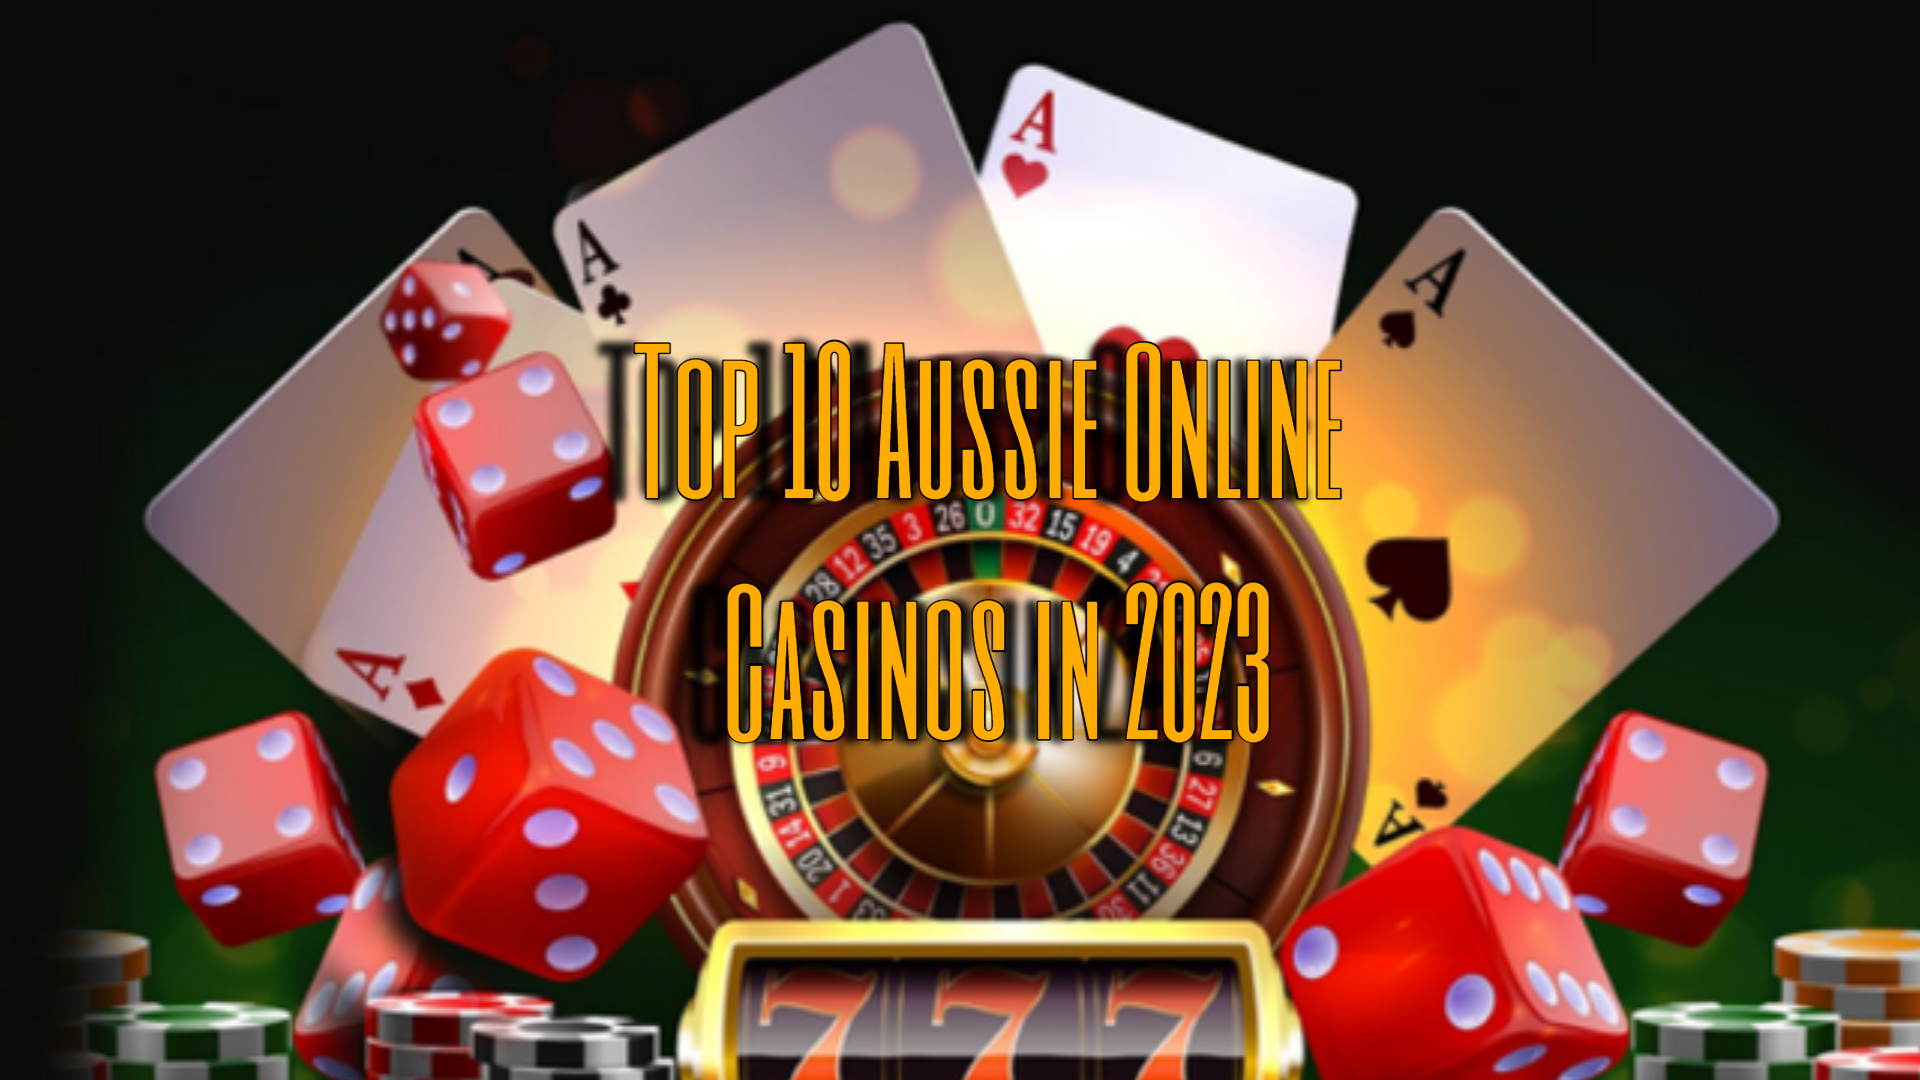 Aussie Online Casinos - Top 10 Aussie Online Casino in 2023